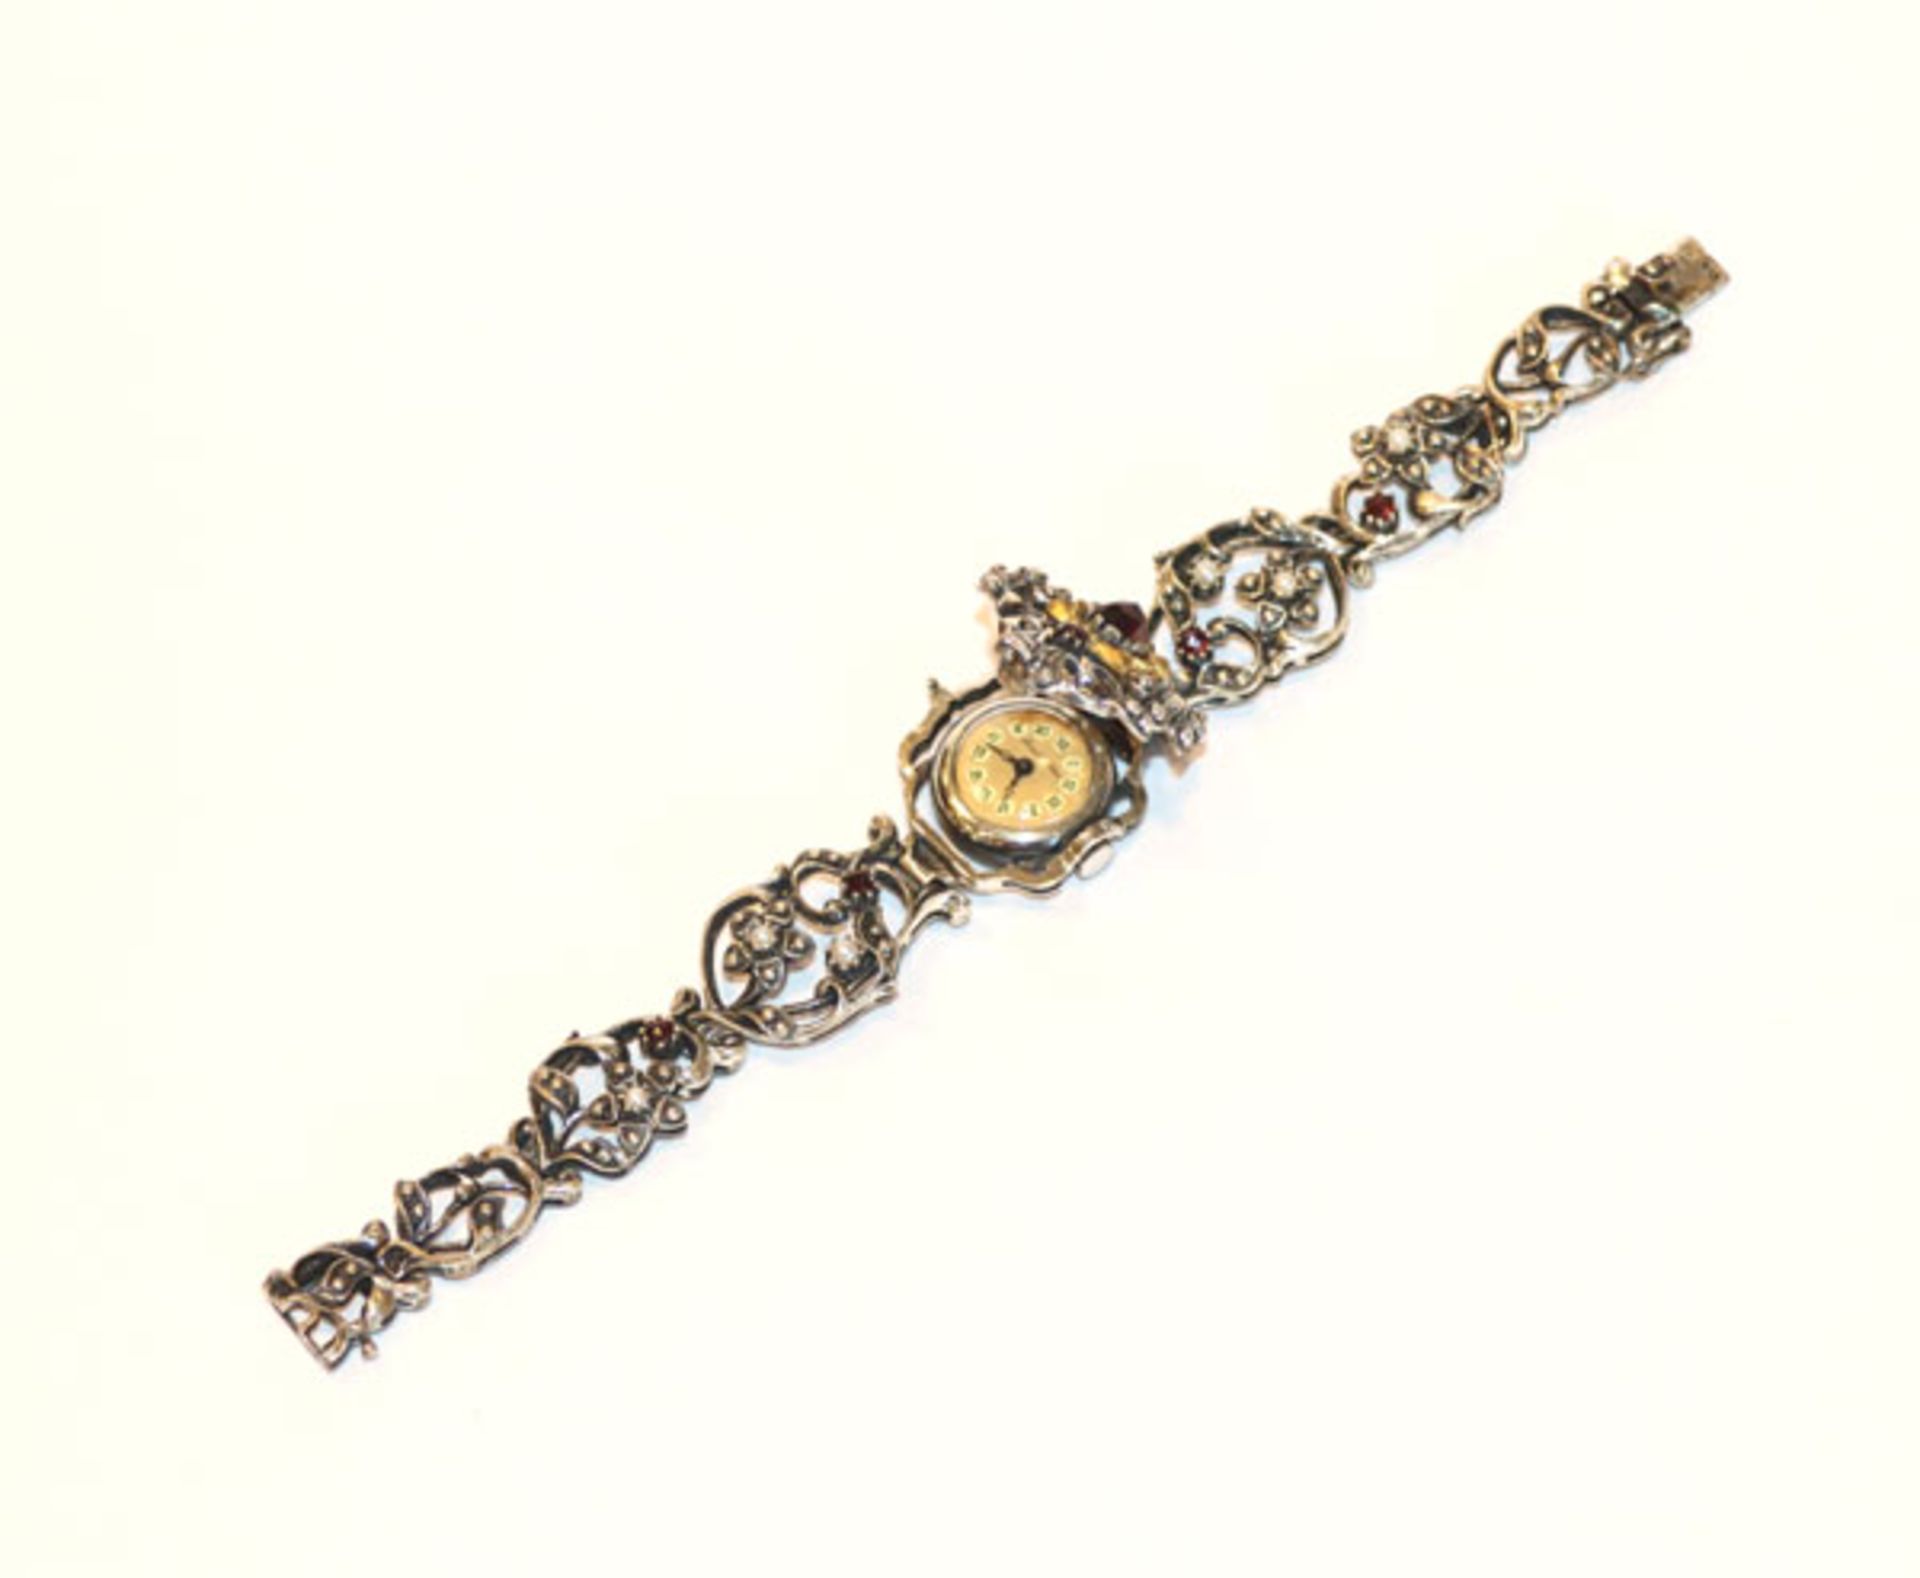 Silber Trachten-Armband mit Uhr, verziert mit Granaten und kleinen Perlchen, Bartel & Sohn,